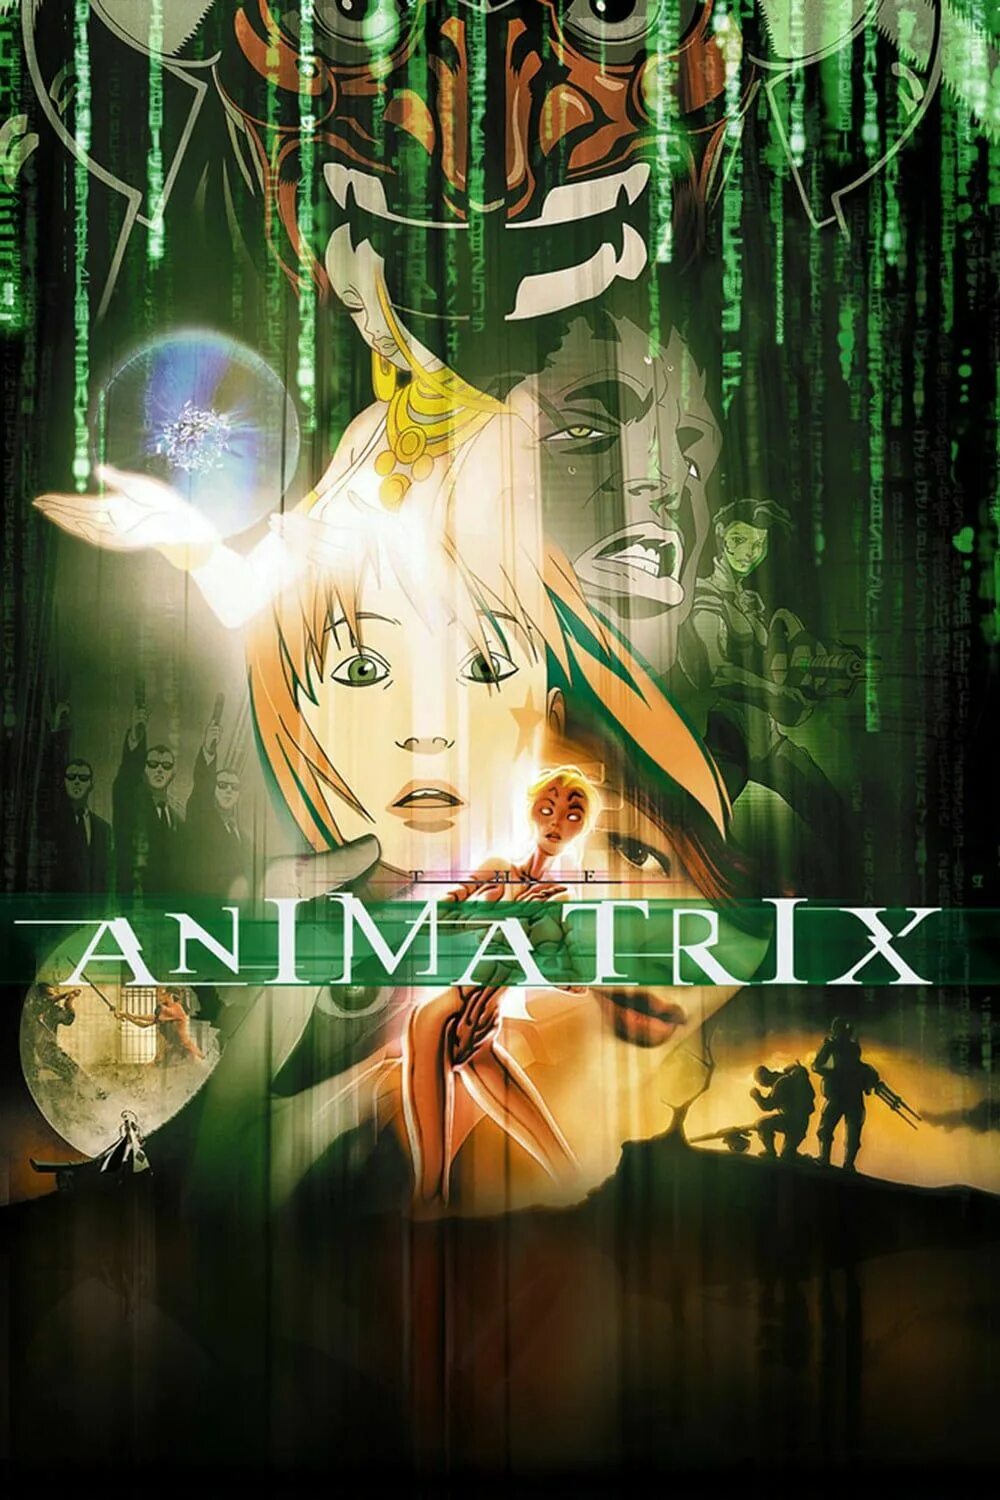 Аниматрица (2003). Аниматрица (the Animatrix, 2003 год). Аниматрица 2003 Постер. Animatrix